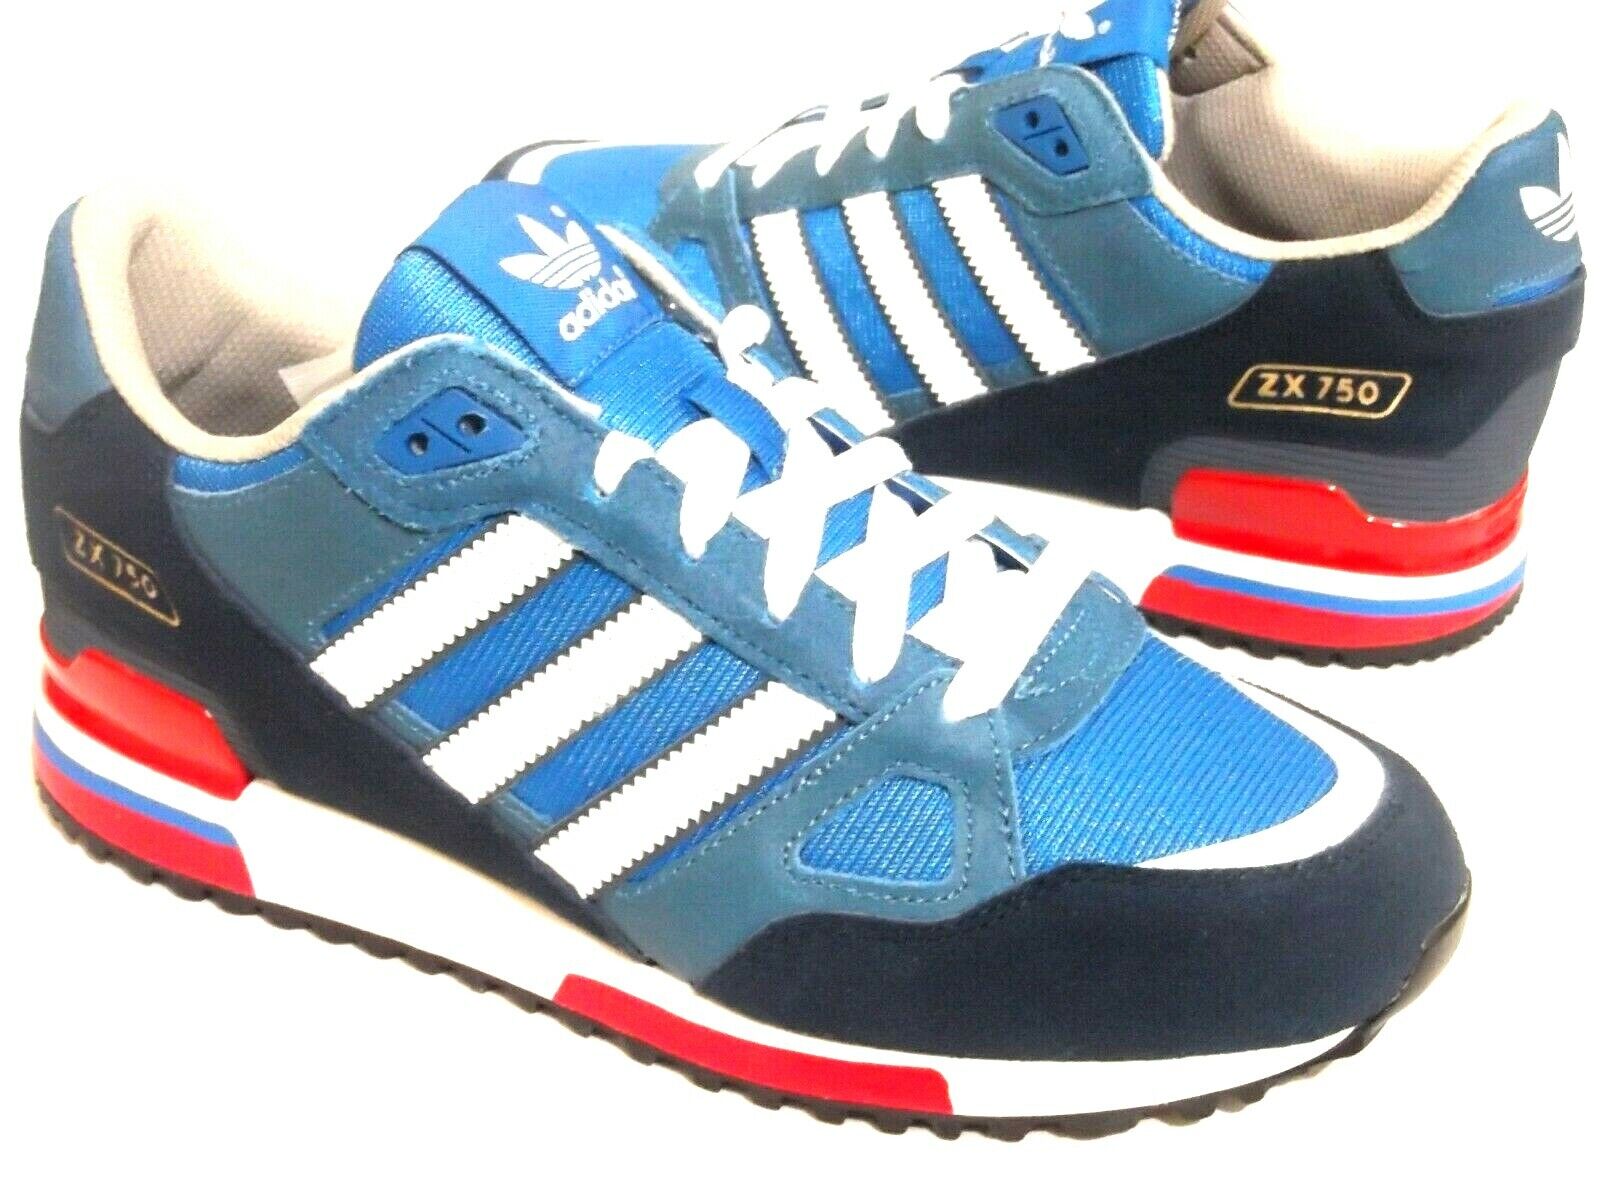 Adidas ZX 750 Originals Zapatos Para Hombre Entrenadores Reino Unido Talla 7 a 12 G96718 eBay